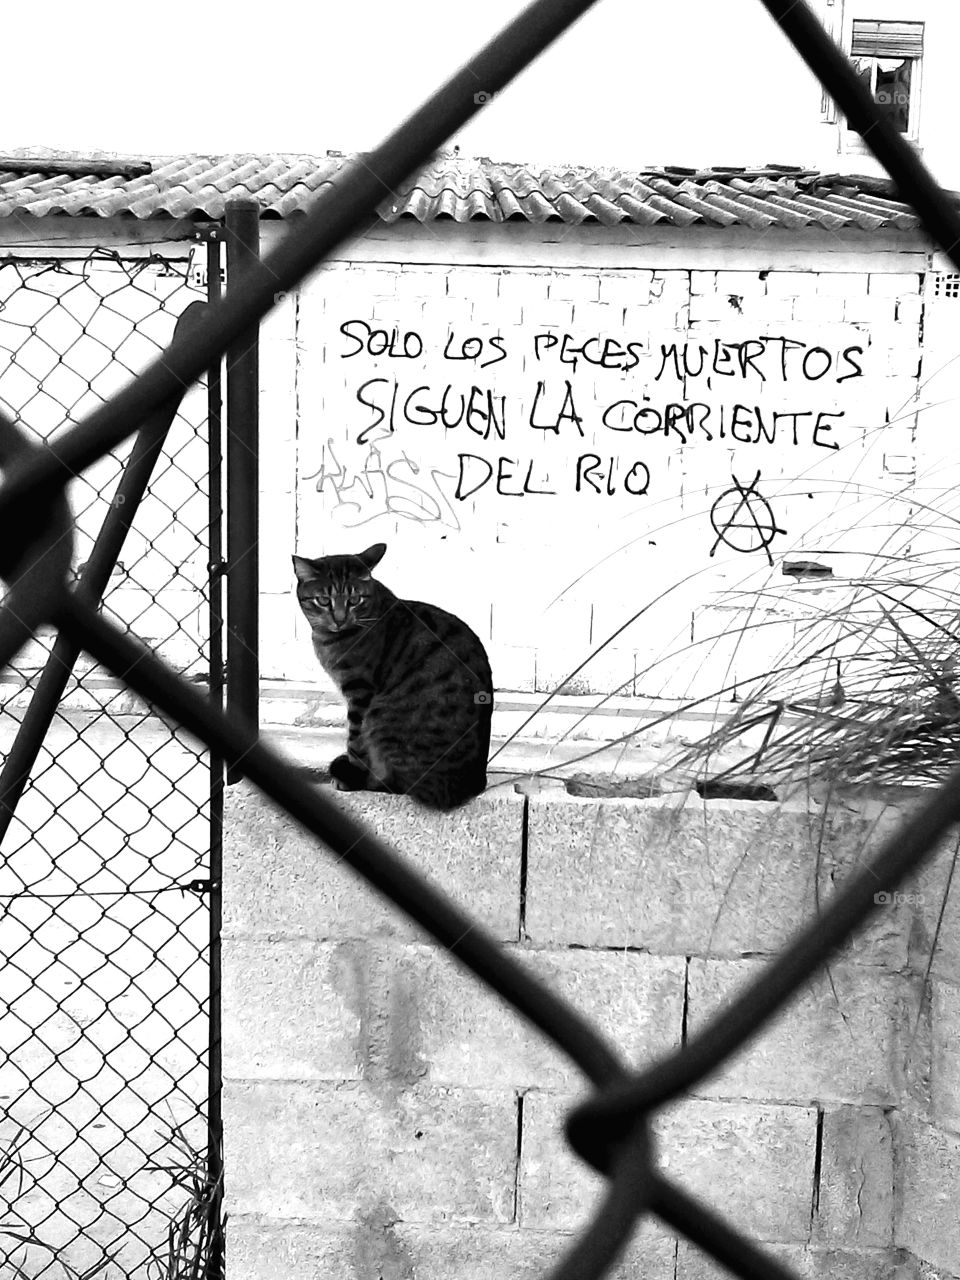 Cat and graffiti